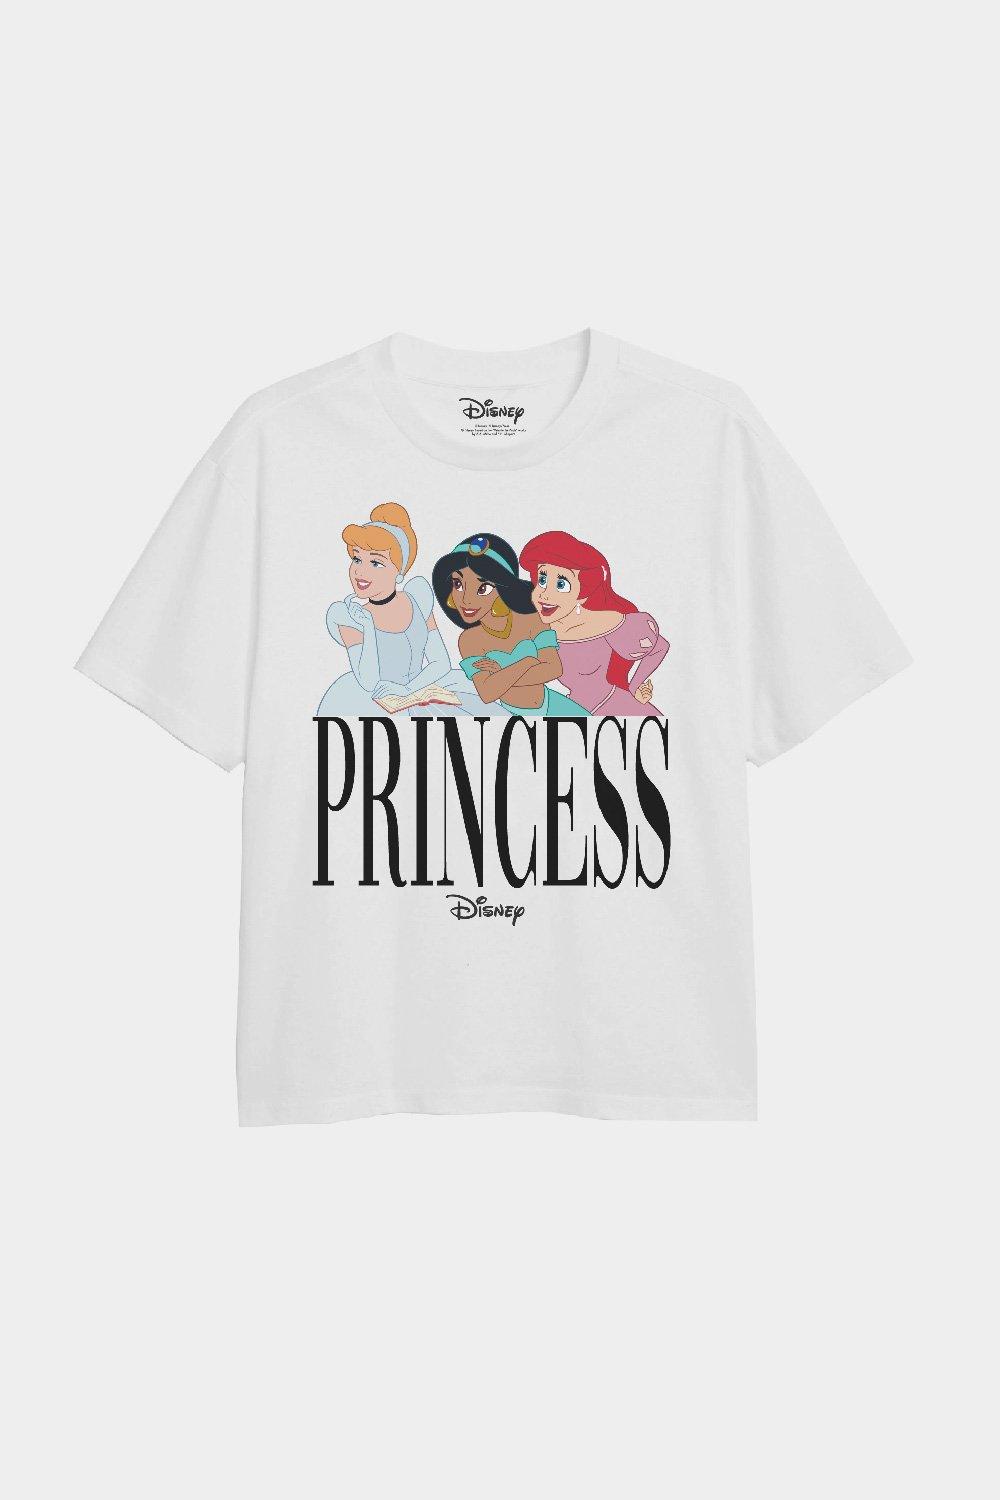 Футболка для девочек «Принцесса Трио» Disney, белый футболка в ребруску с микки и минни маус disney zara красный